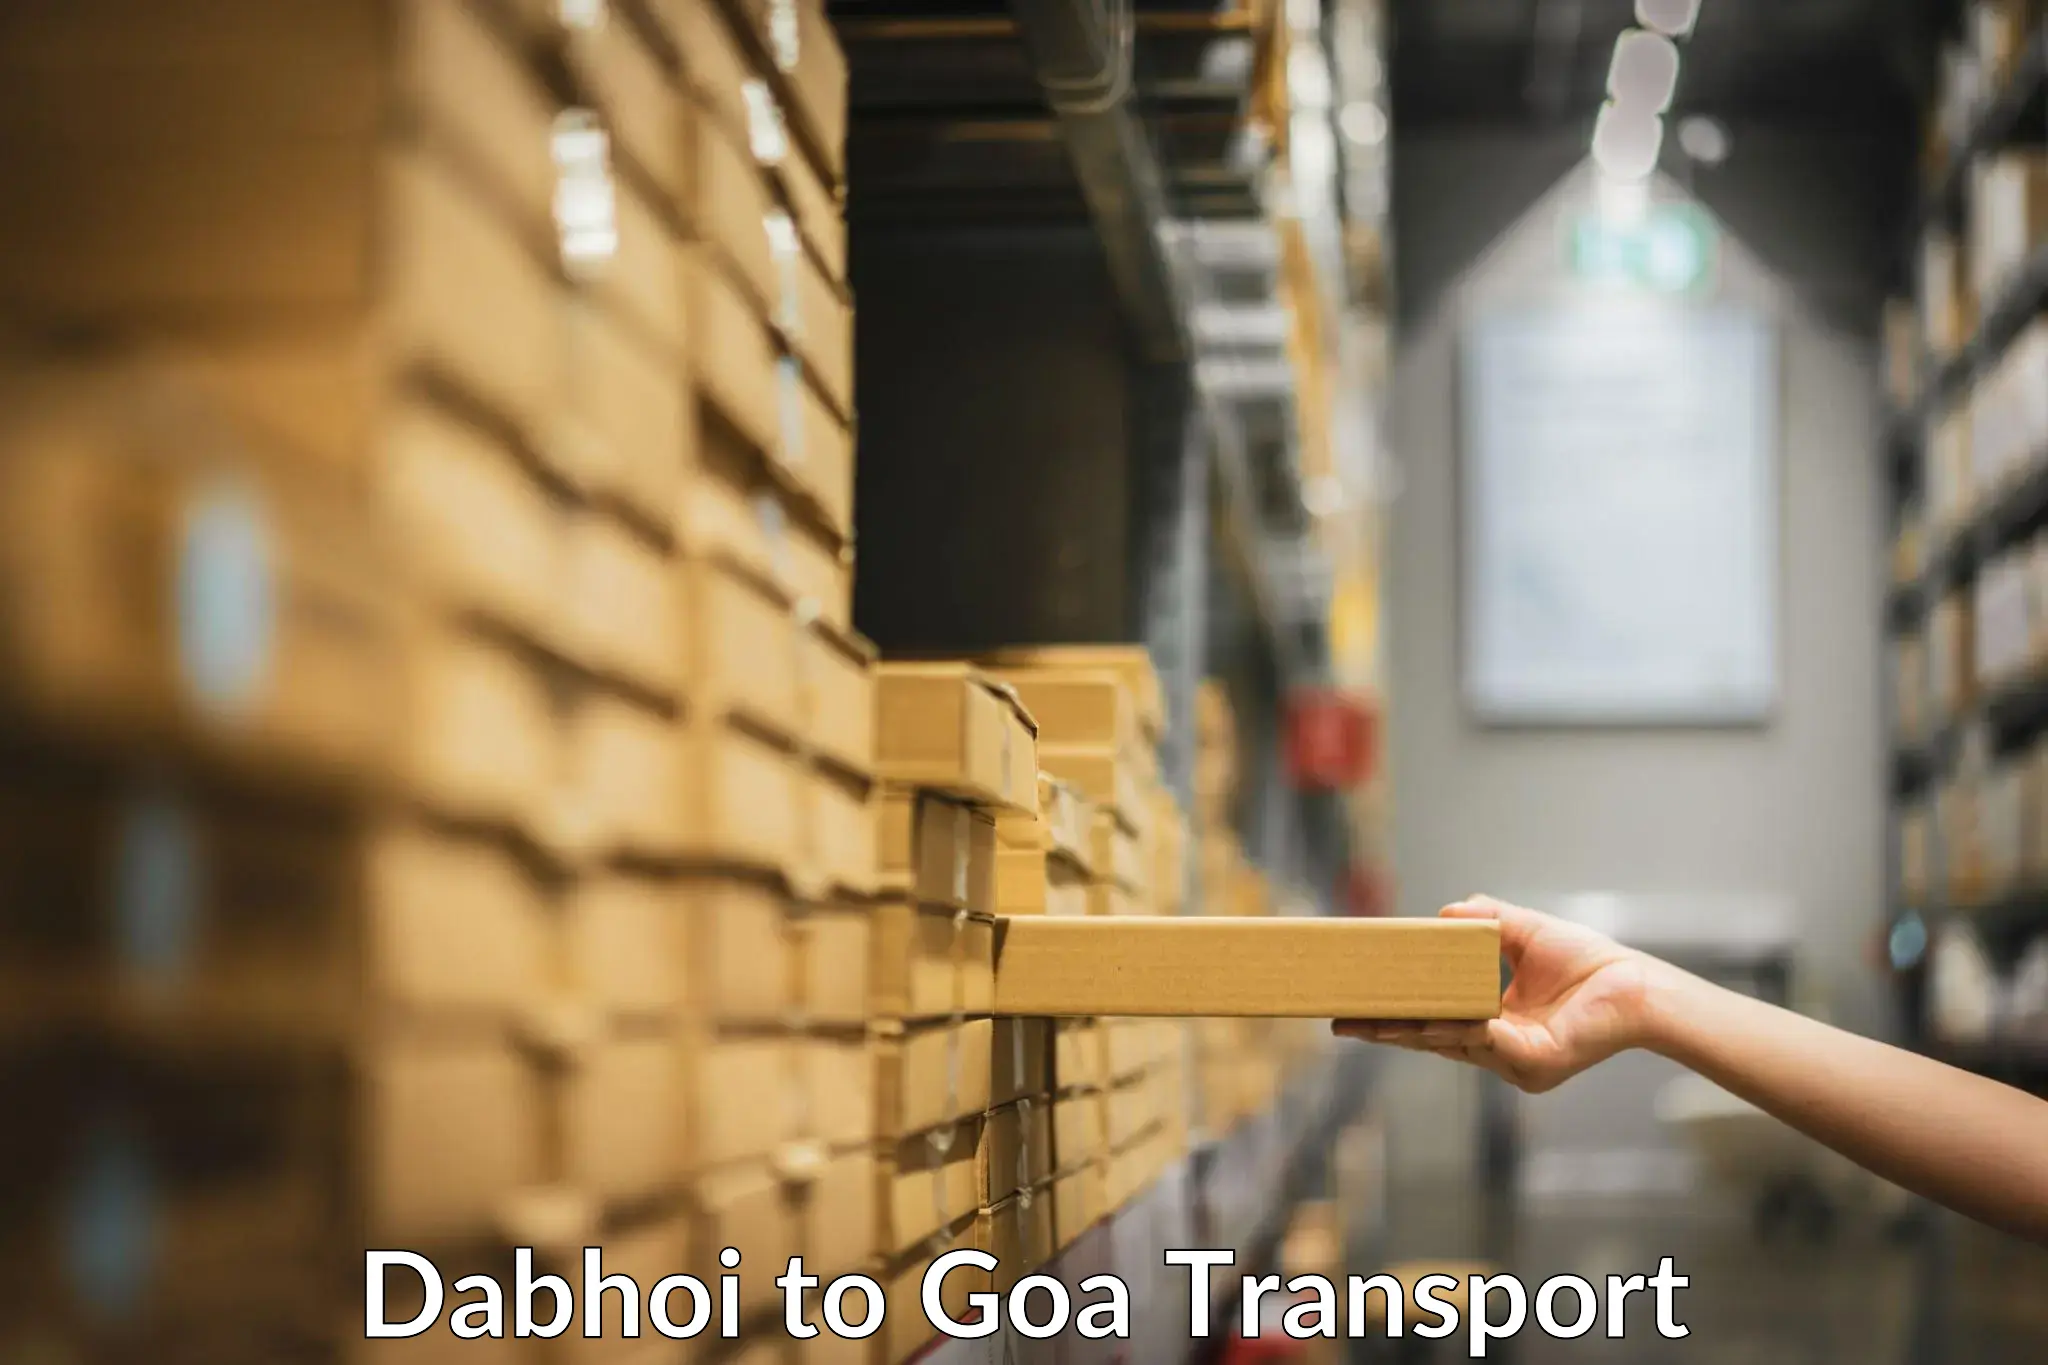 Two wheeler transport services Dabhoi to Mormugao Port